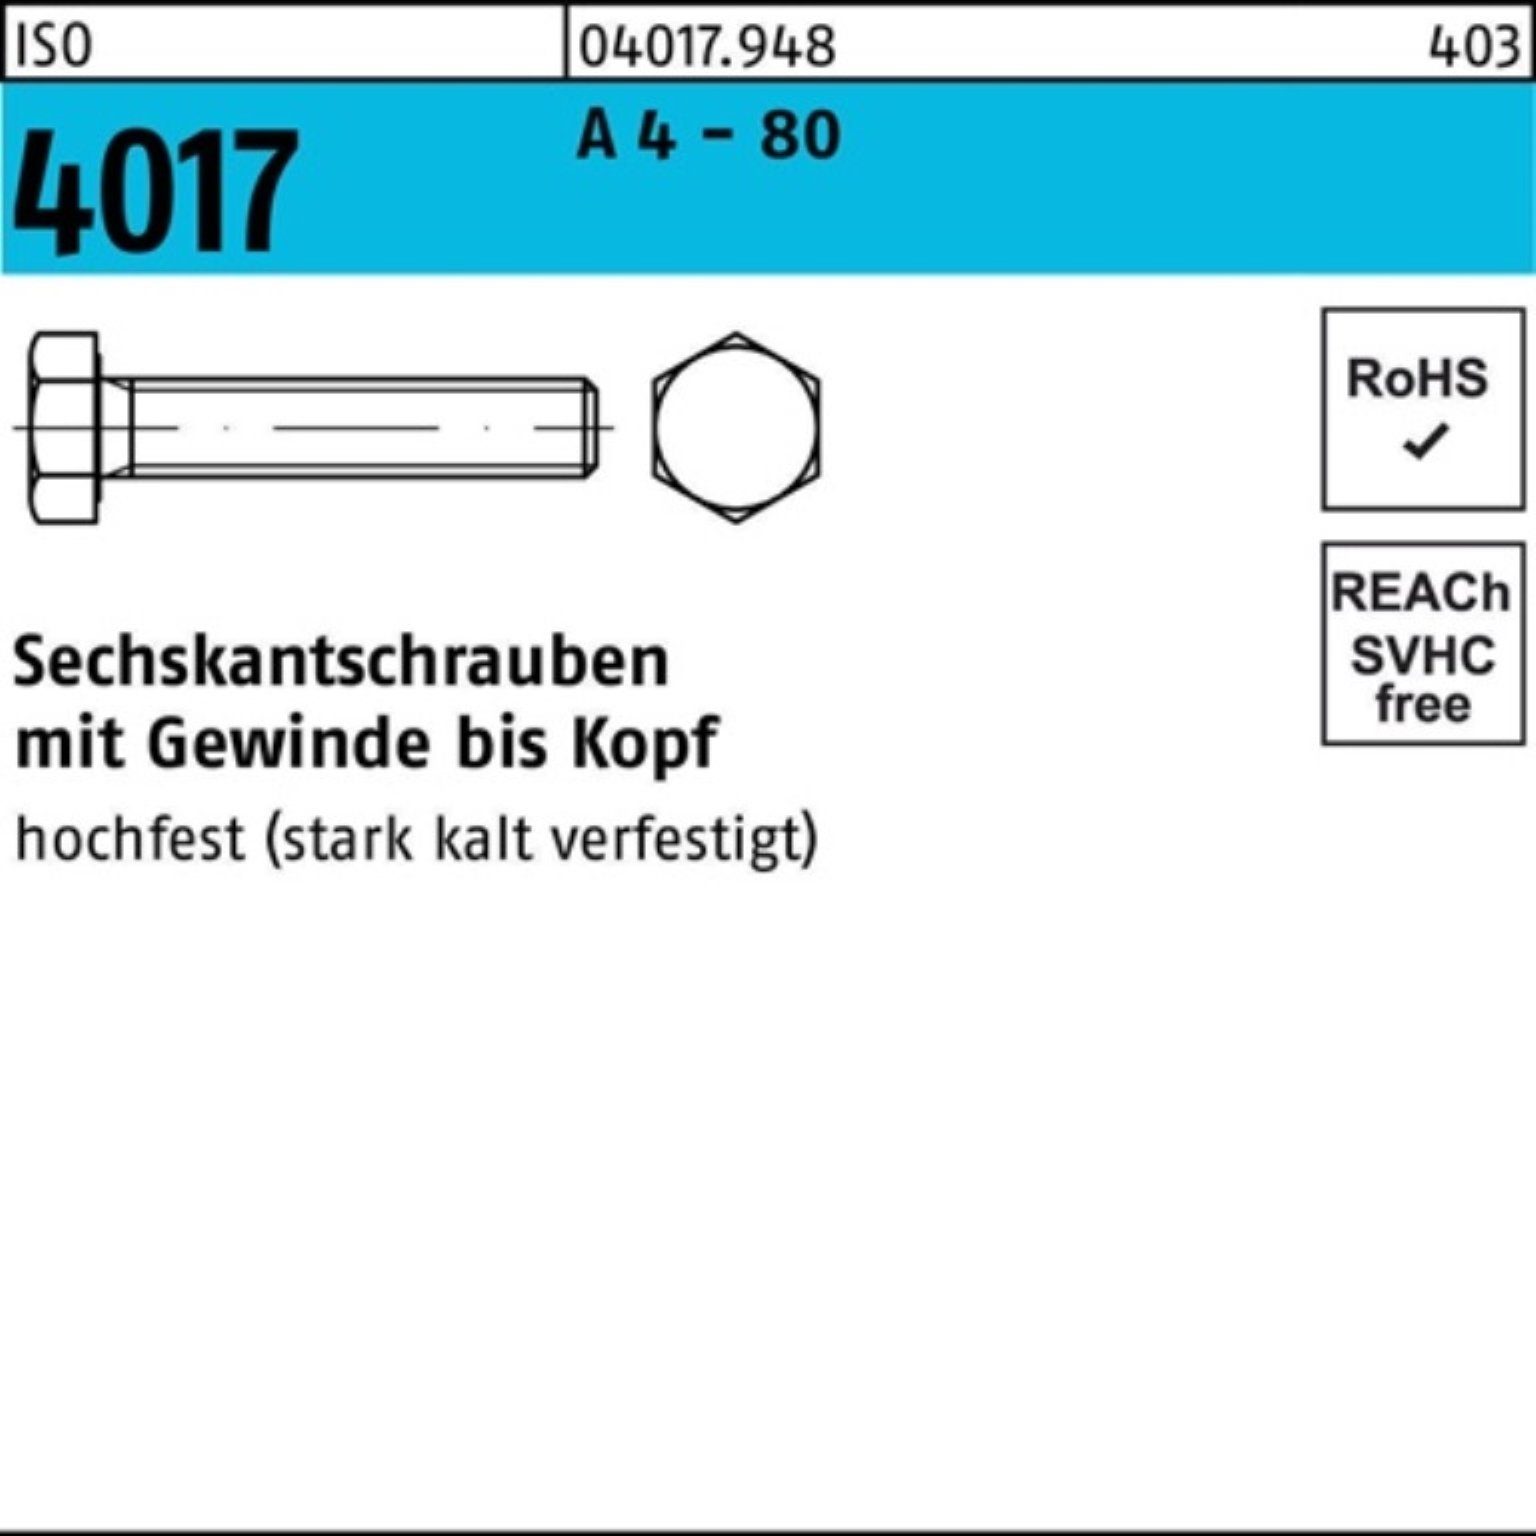 Bufab Sechskantschraube 100er Pack Sechskantschraube ISO 4017 VG M12x 25 A 4 - 80 100 Stück I